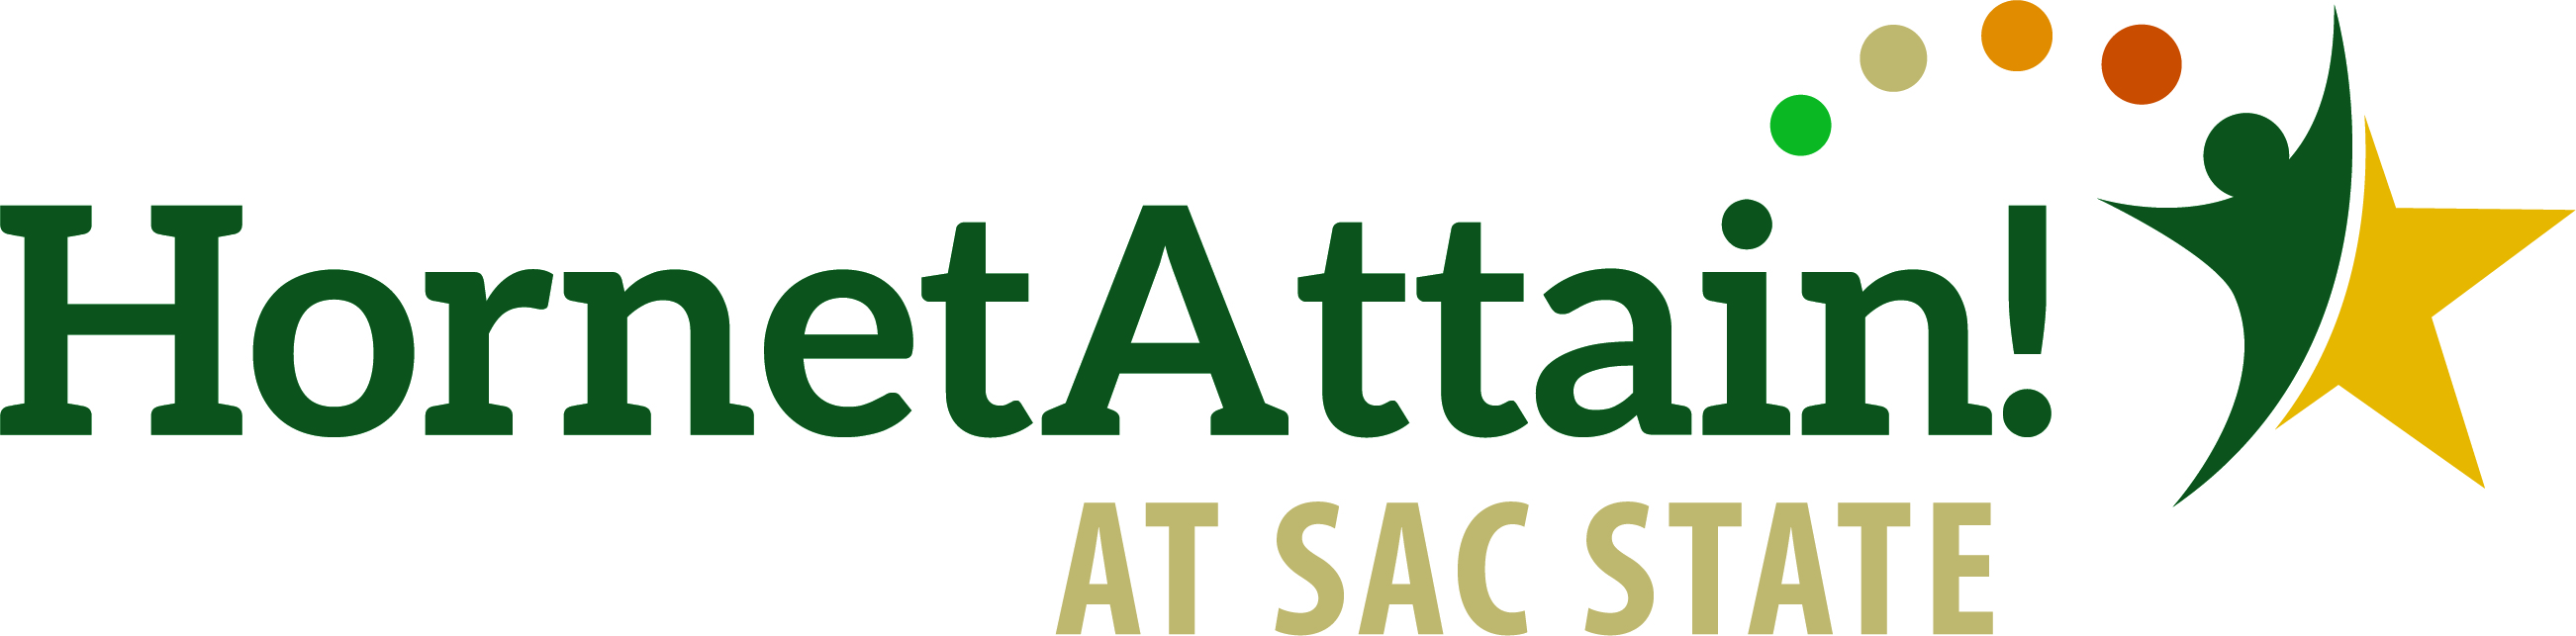 HornetAttain! at Sac State logo